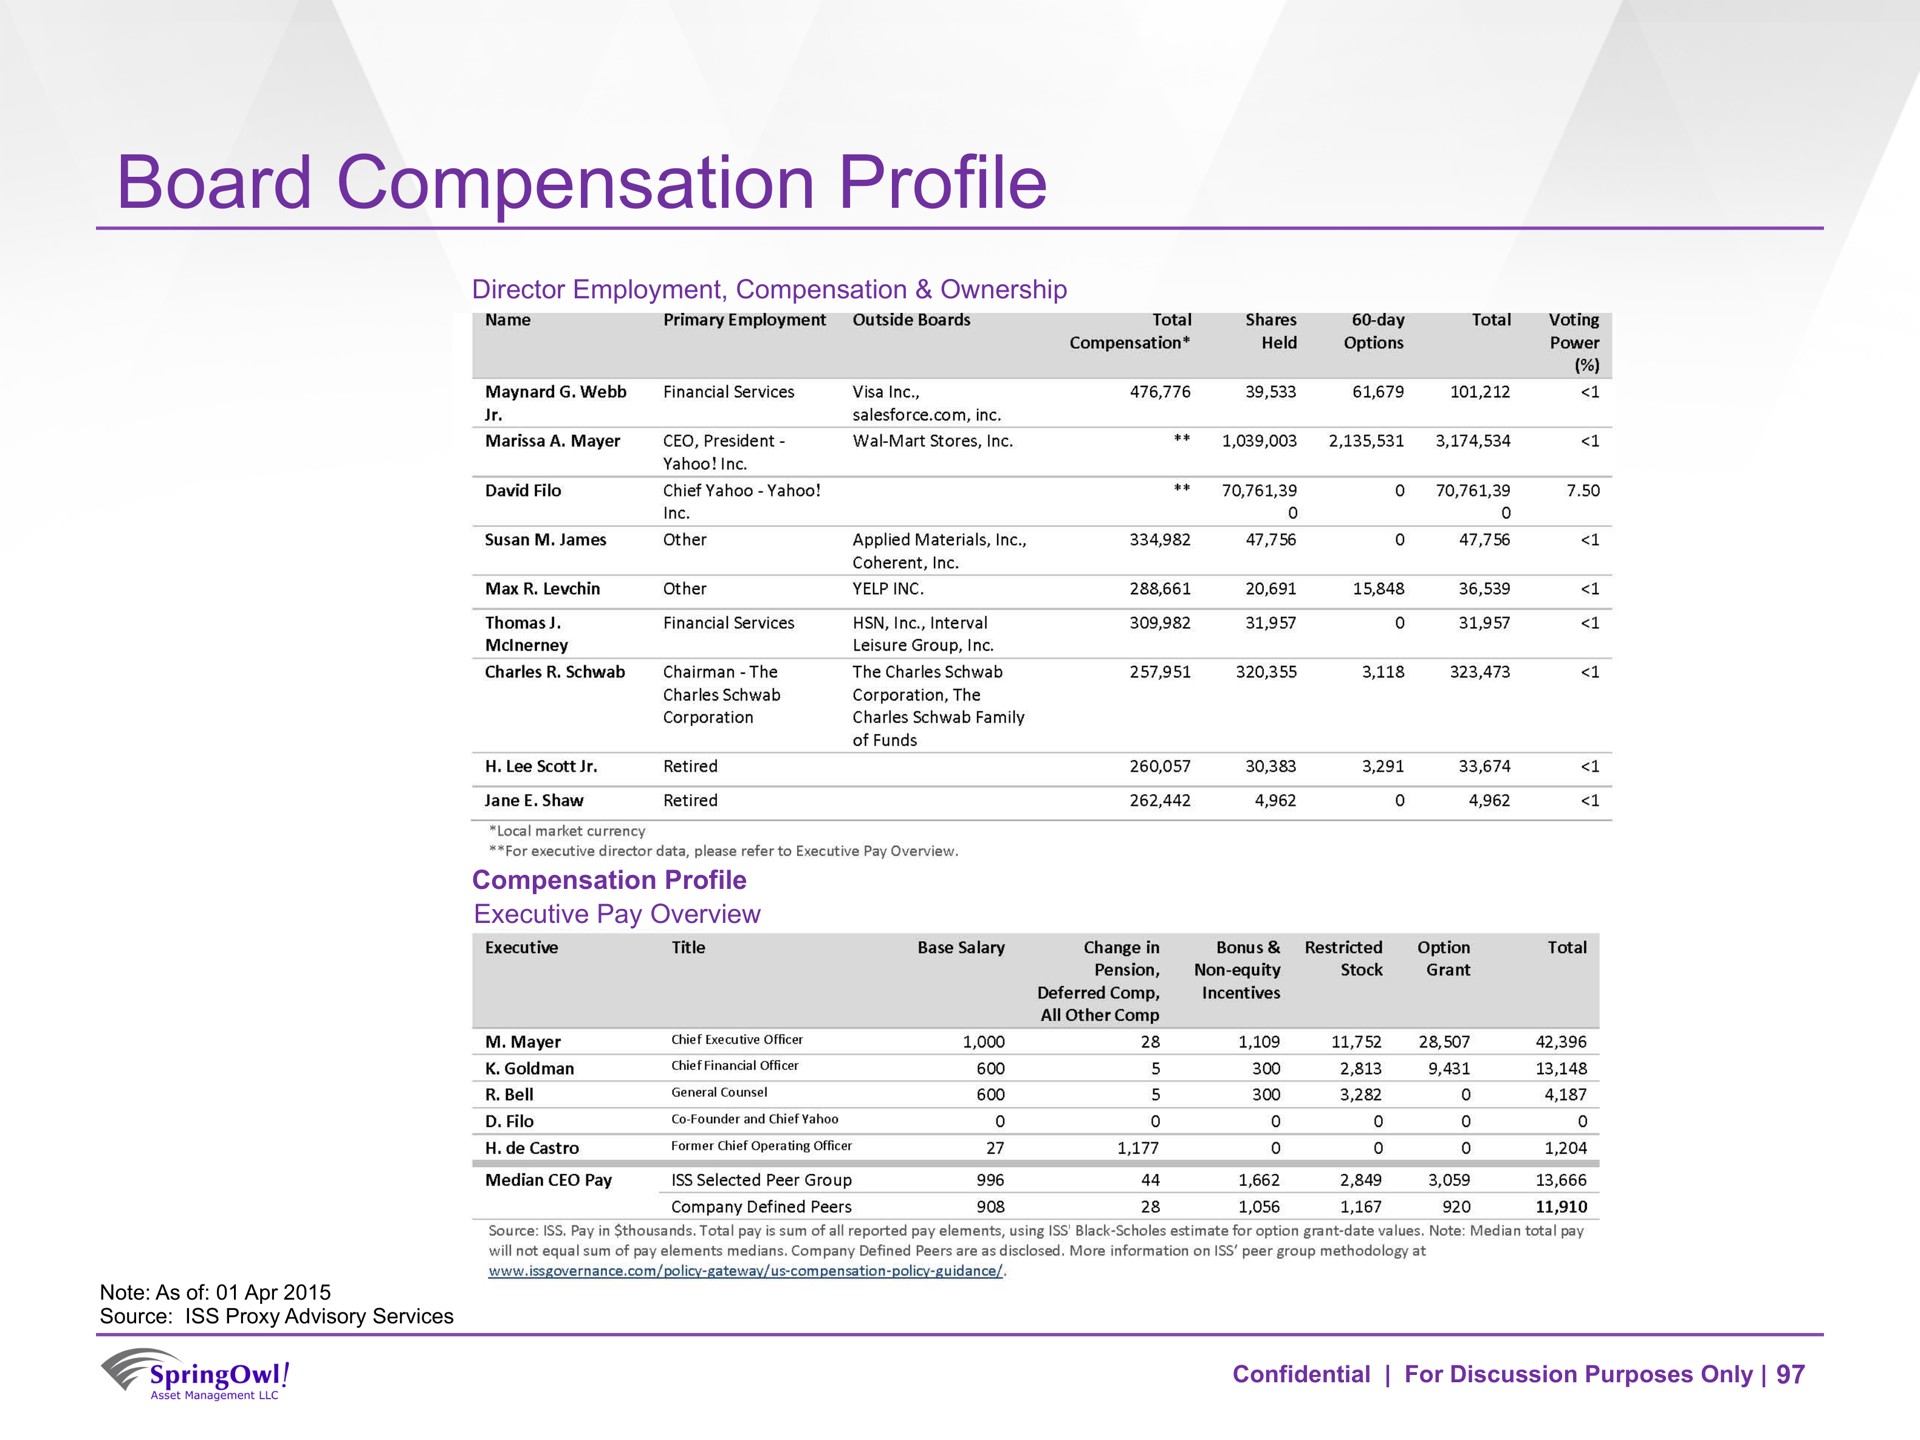 board compensation profile | SpringOwl